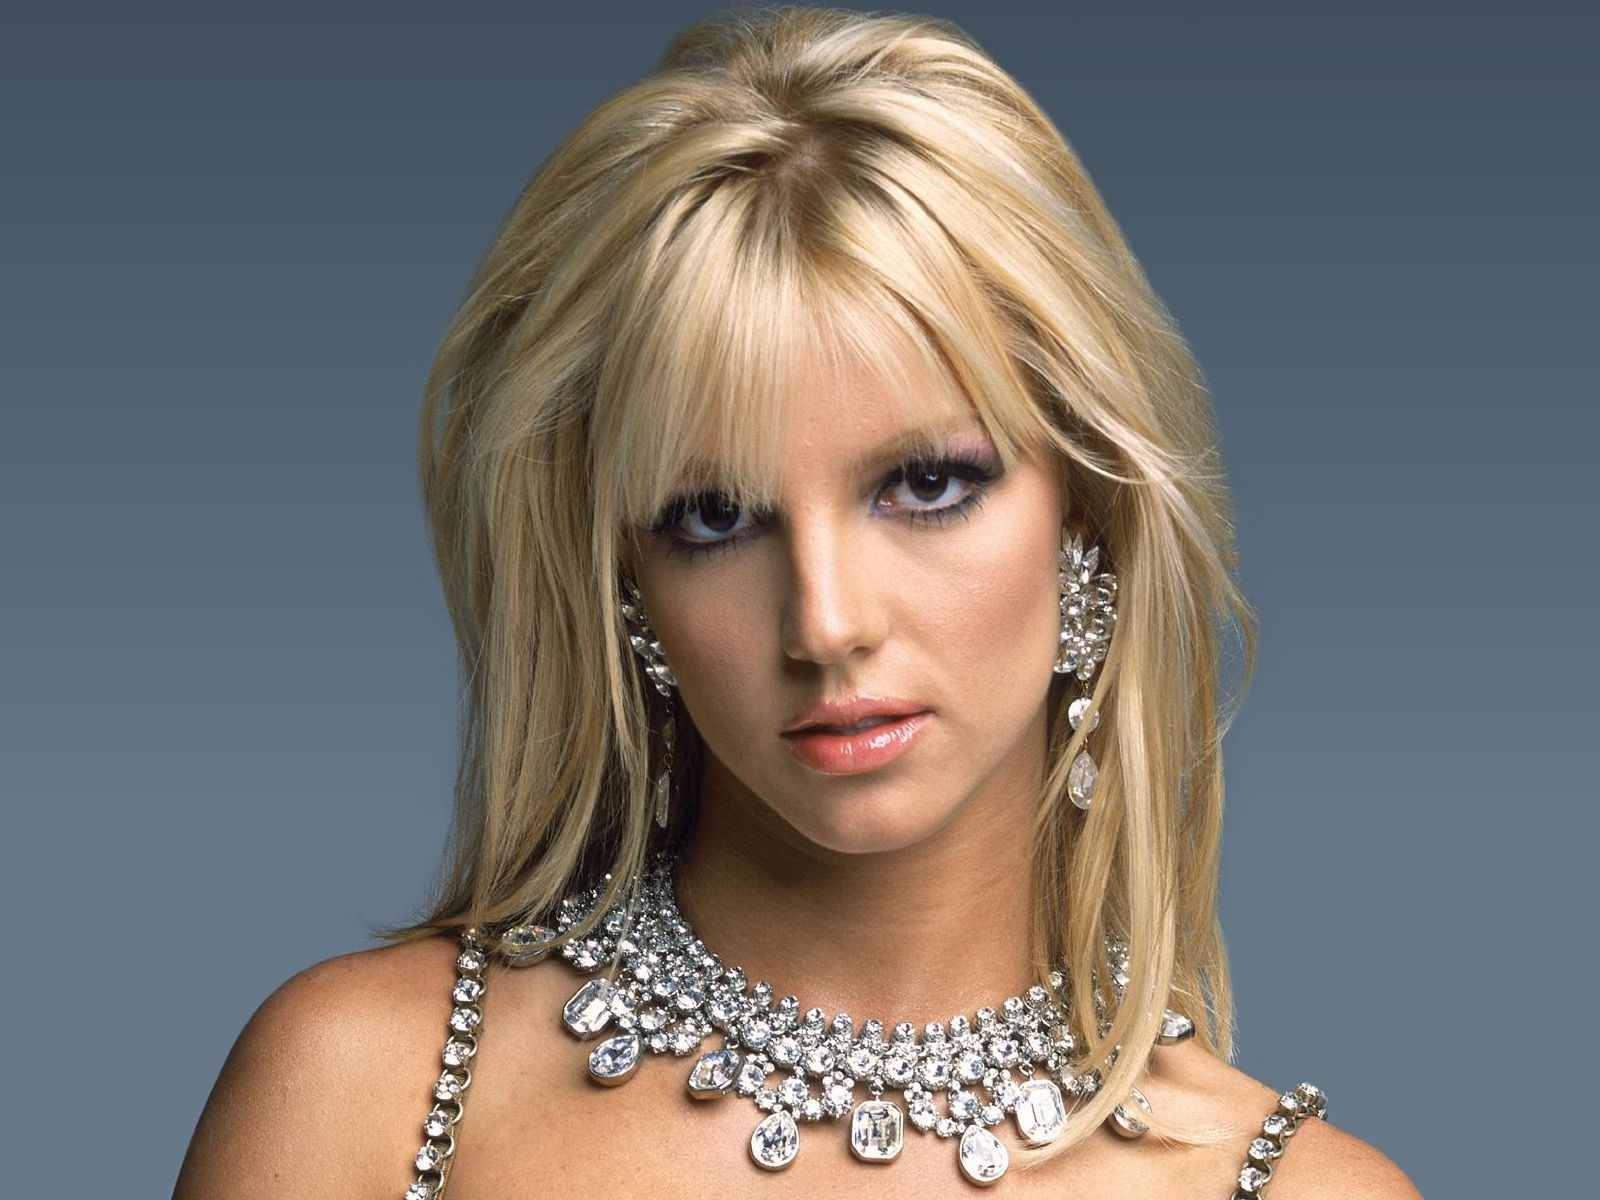 http://4.bp.blogspot.com/-2-GgC1gzI7k/TVuxDyh4wcI/AAAAAAAAAAs/wtoI44wgjms/s1600/Britney-Spears+4.jpg